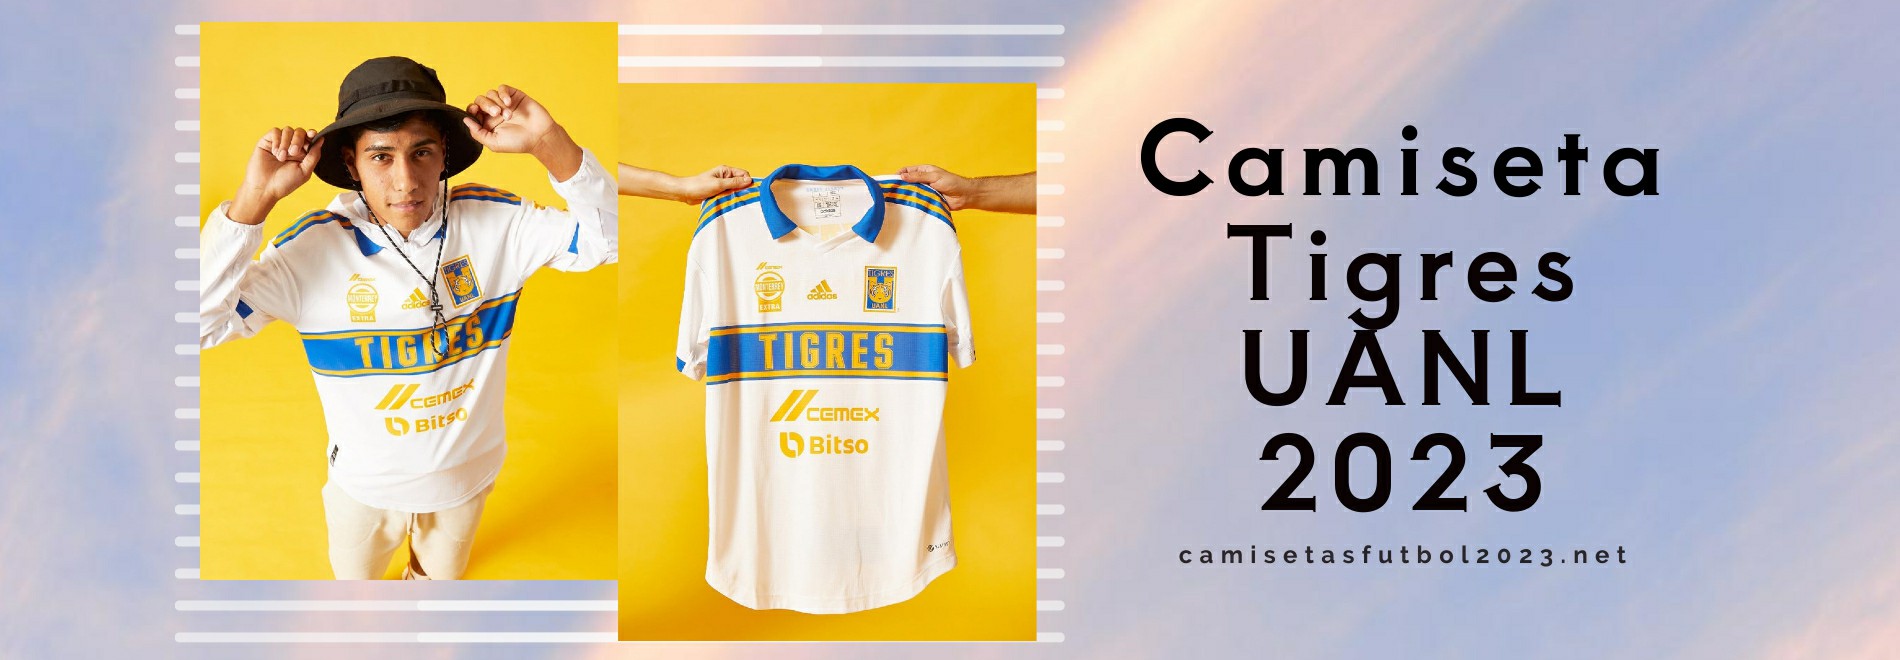 Camiseta Tigres UANL 2023-2024